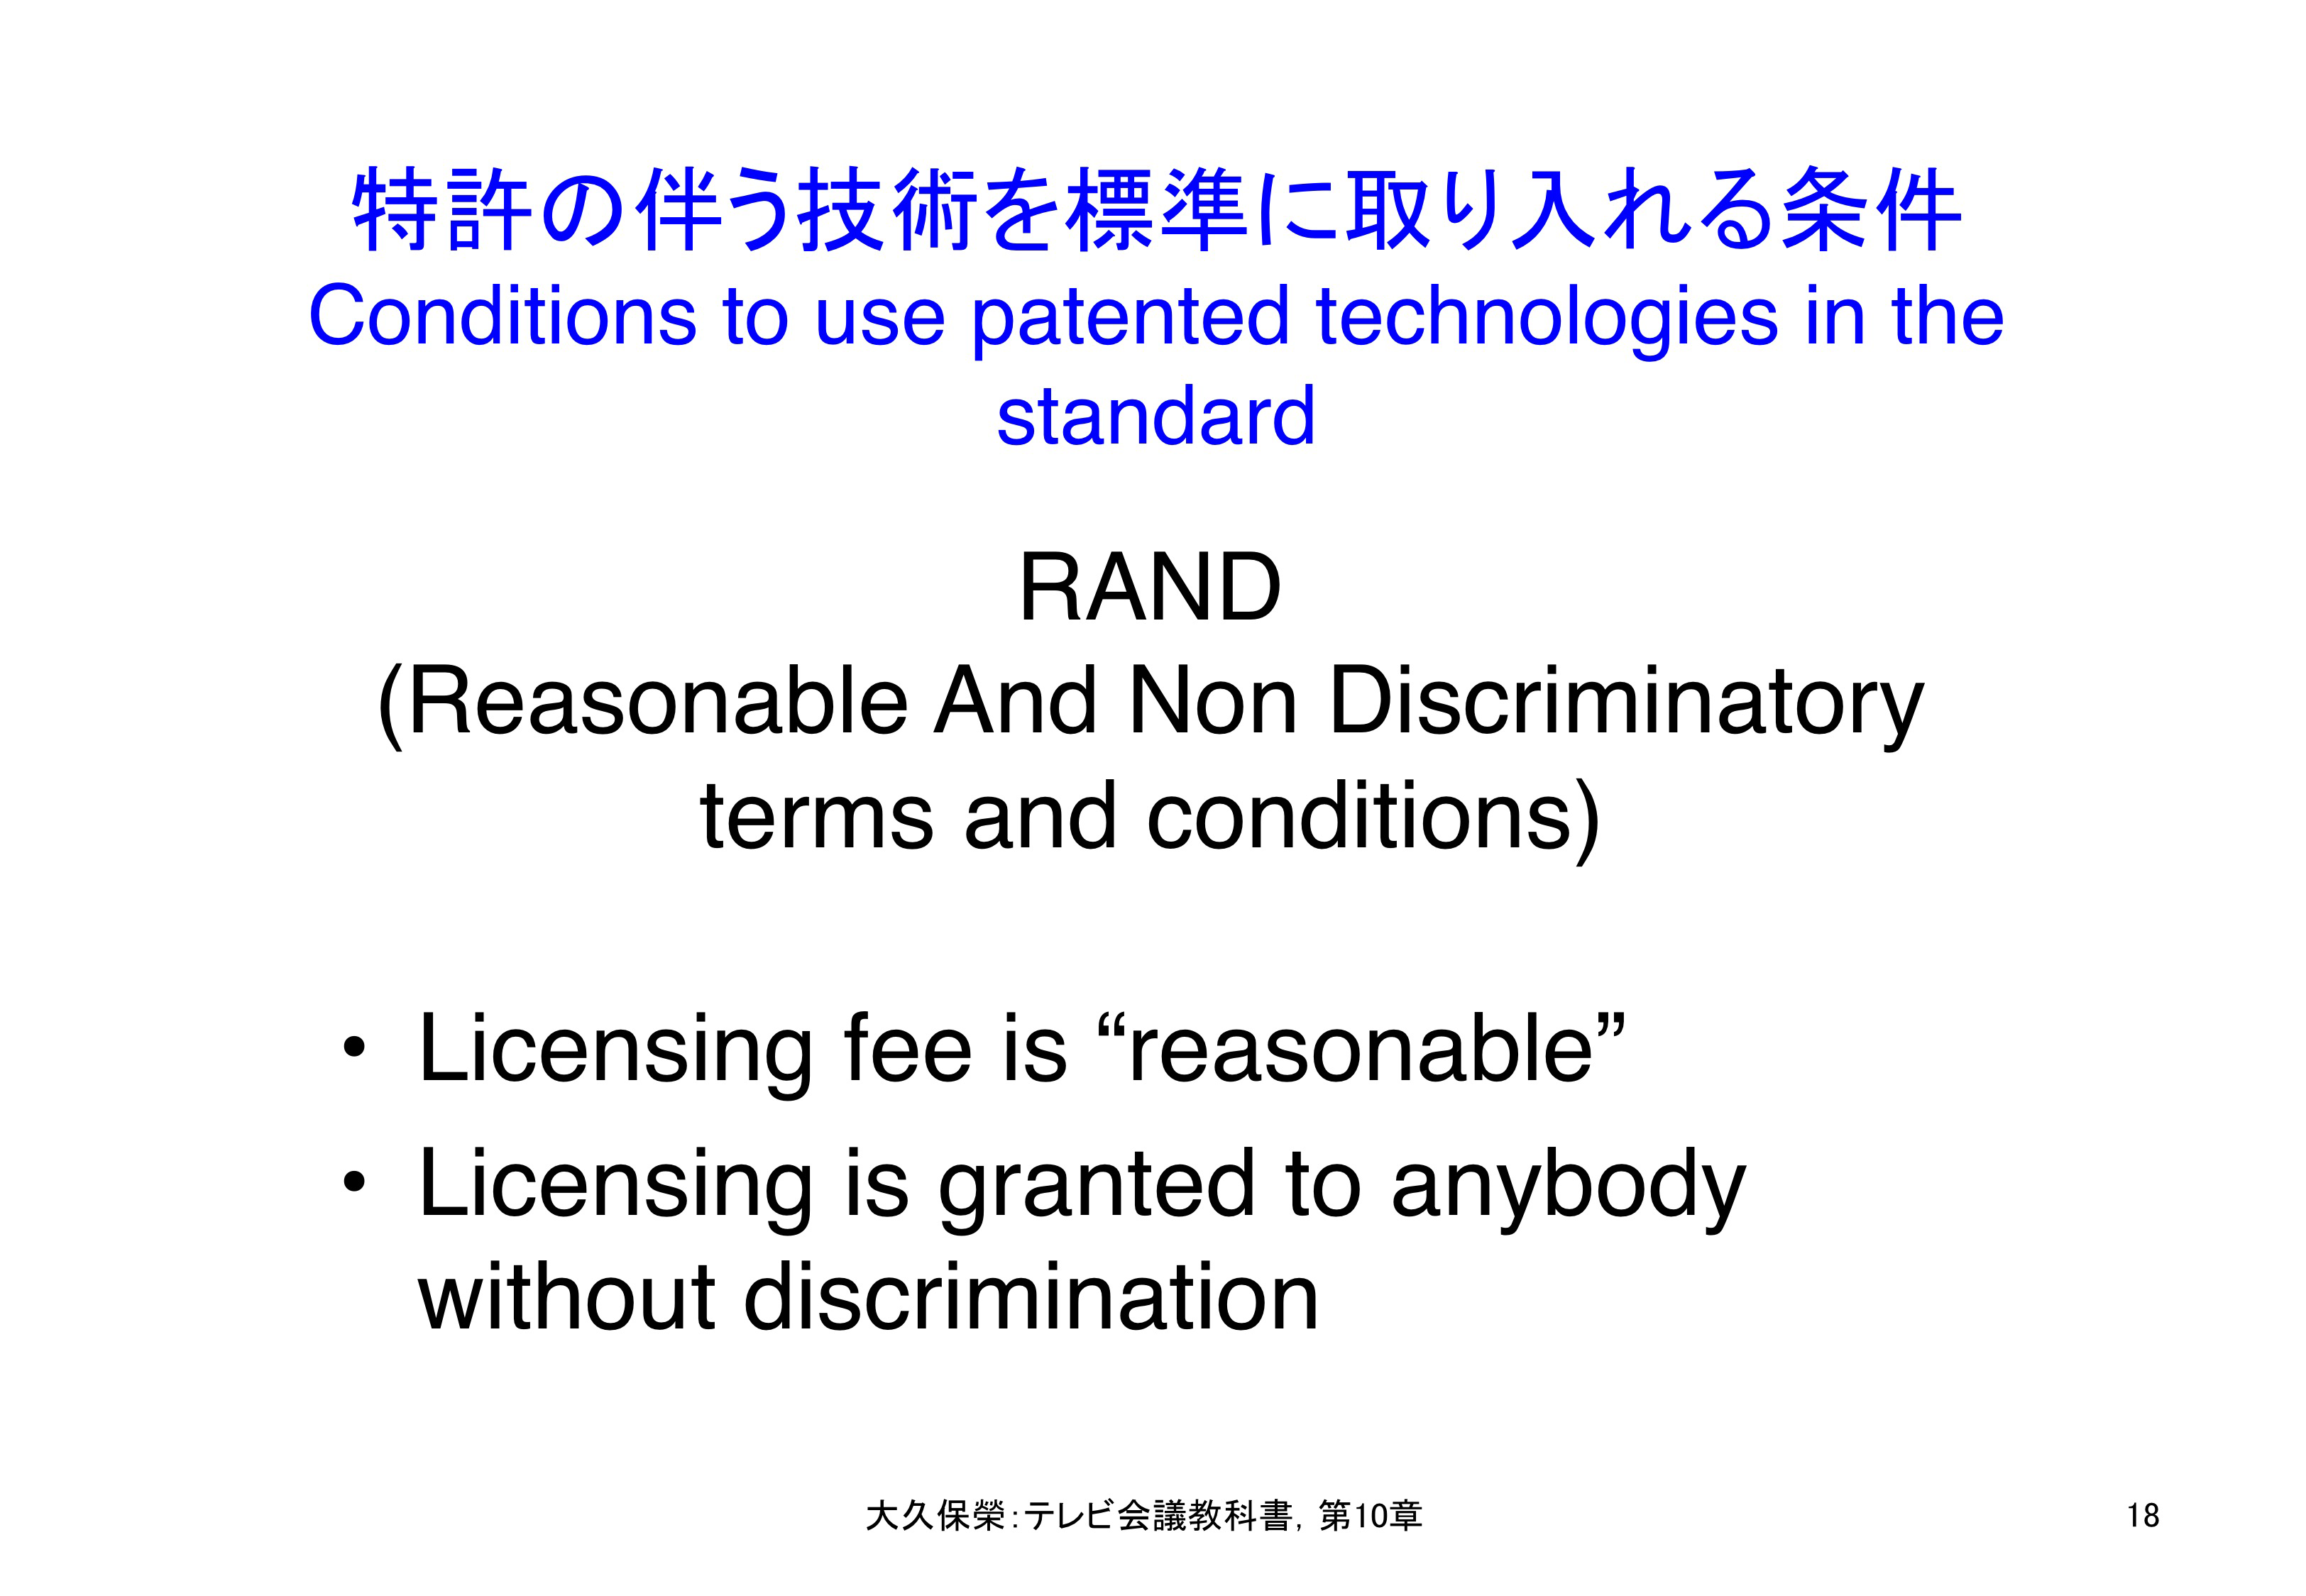 図10-18 特許のある技術を標準に採用する条件RAND